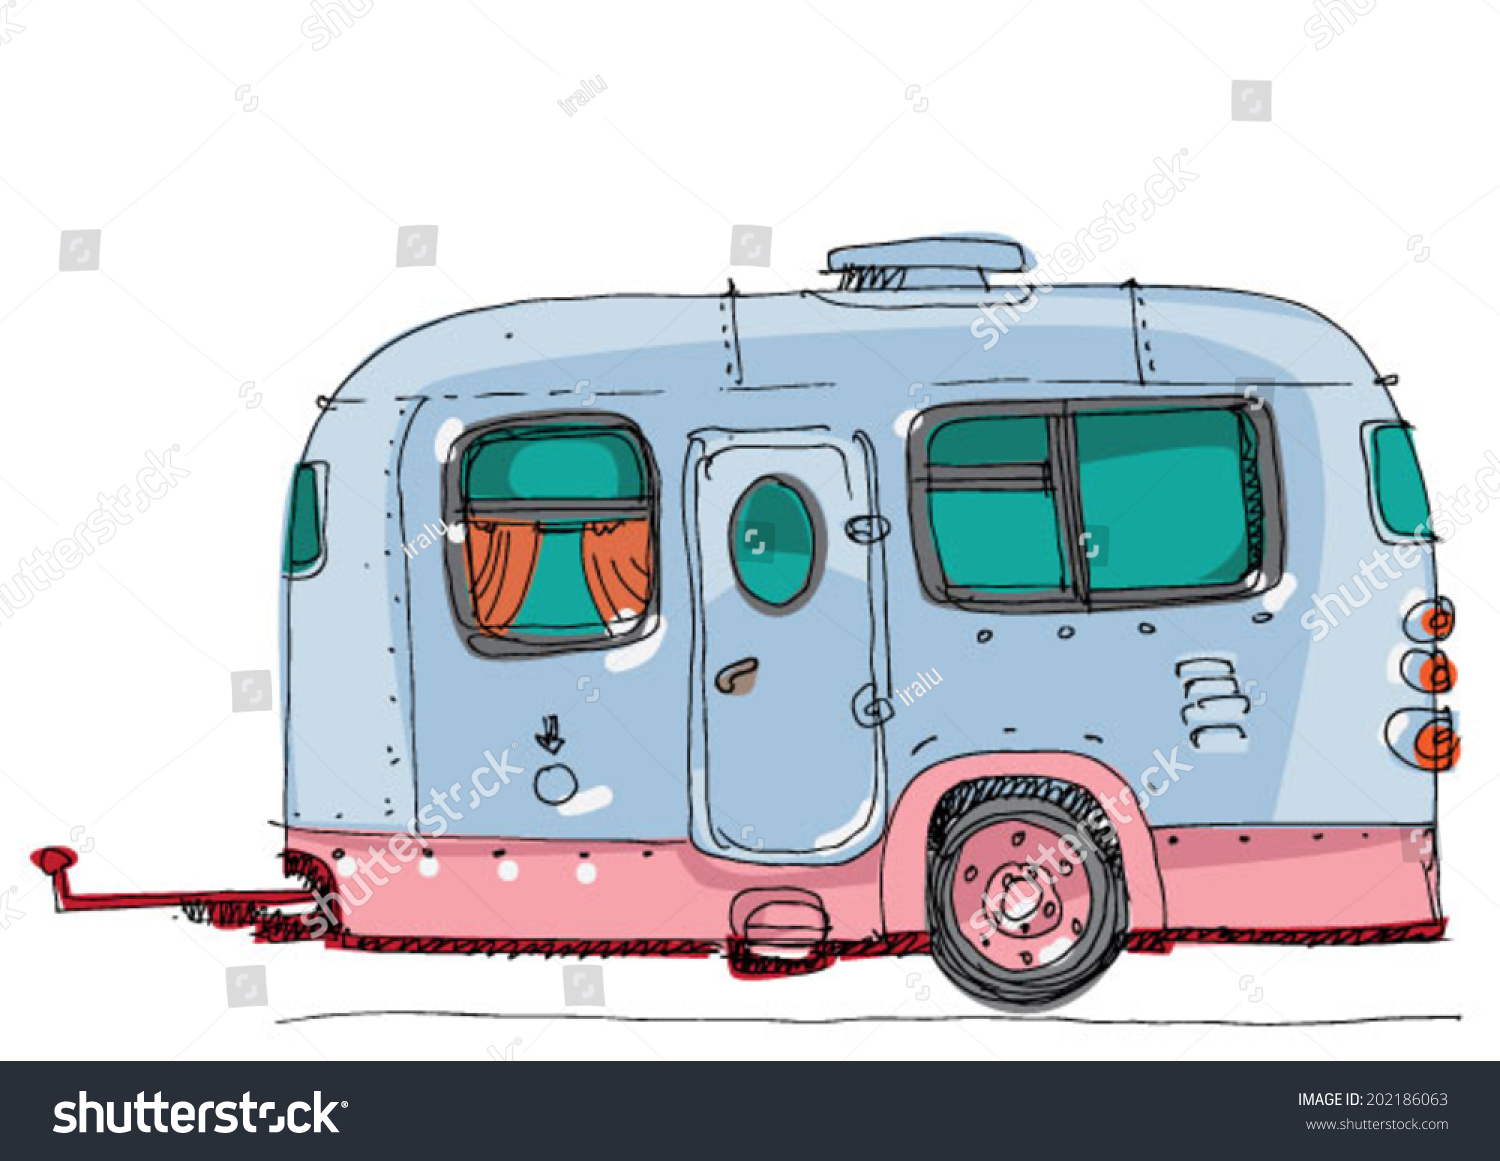 Caravan - Cartoon Stock Vector Illustration 202186063 : Shutterstock